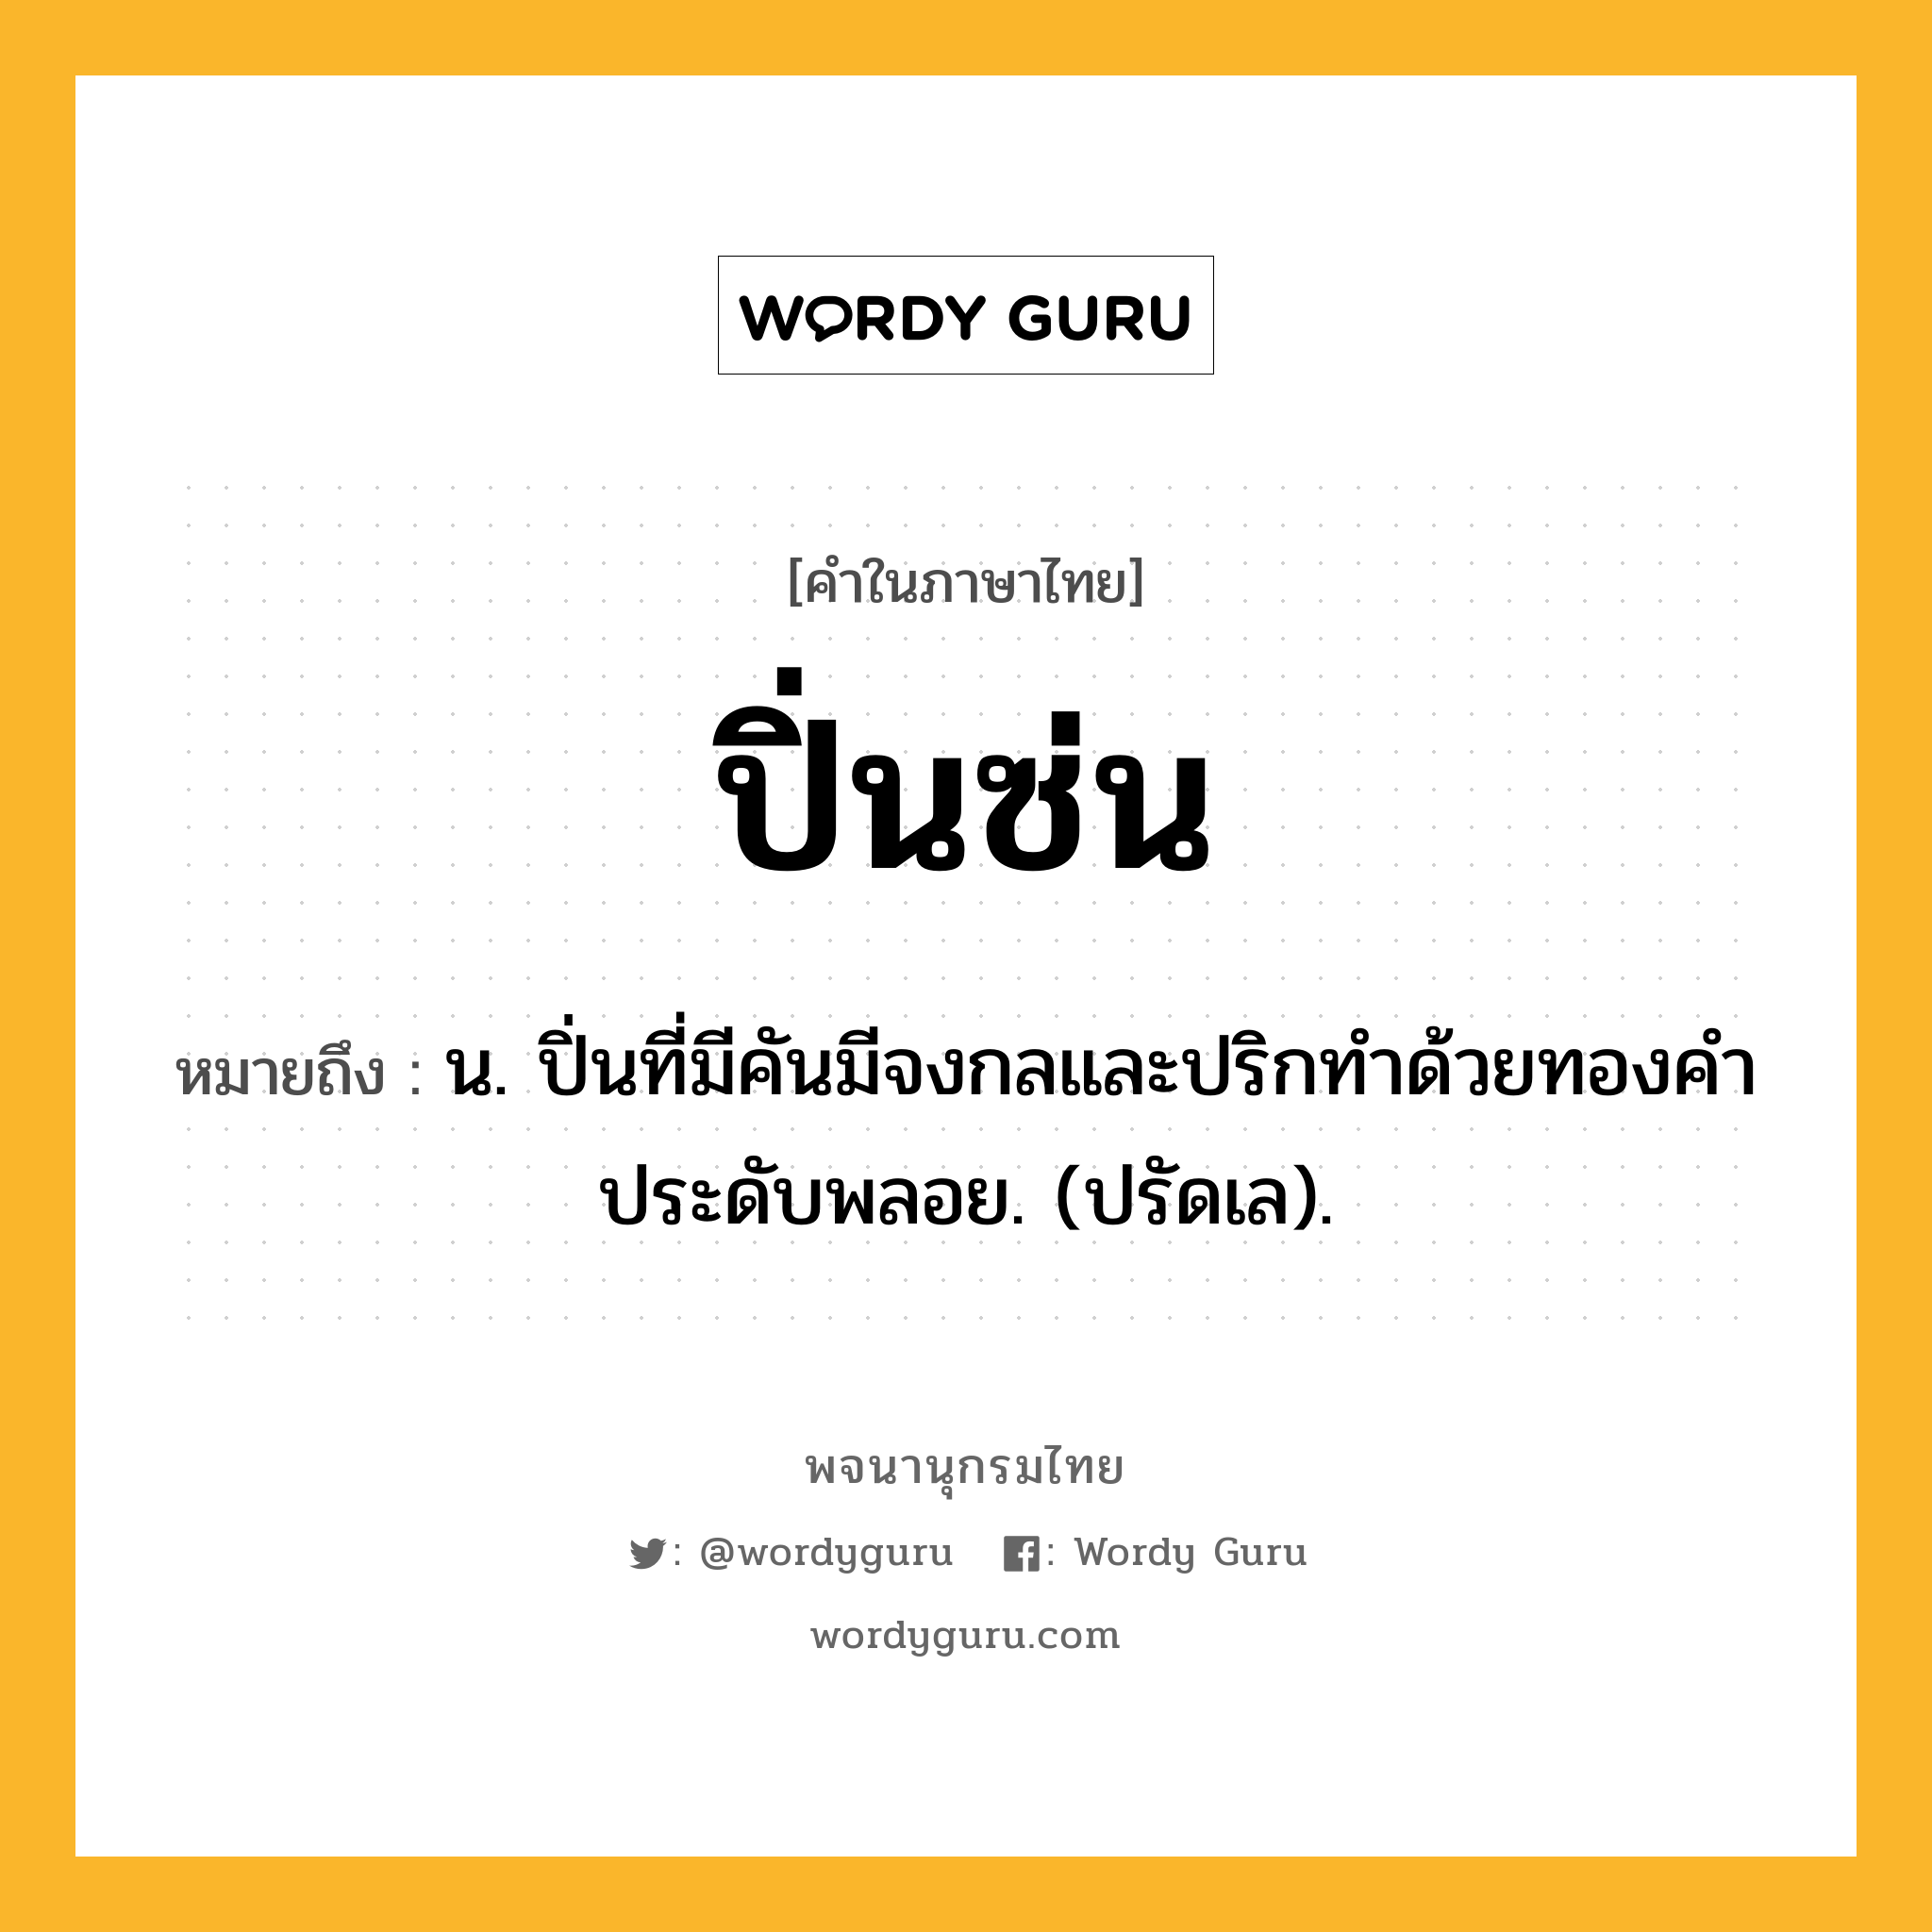 ปิ่นซ่น หมายถึงอะไร?, คำในภาษาไทย ปิ่นซ่น หมายถึง น. ปิ่นที่มีคันมีจงกลและปริกทําด้วยทองคําประดับพลอย. (ปรัดเล).